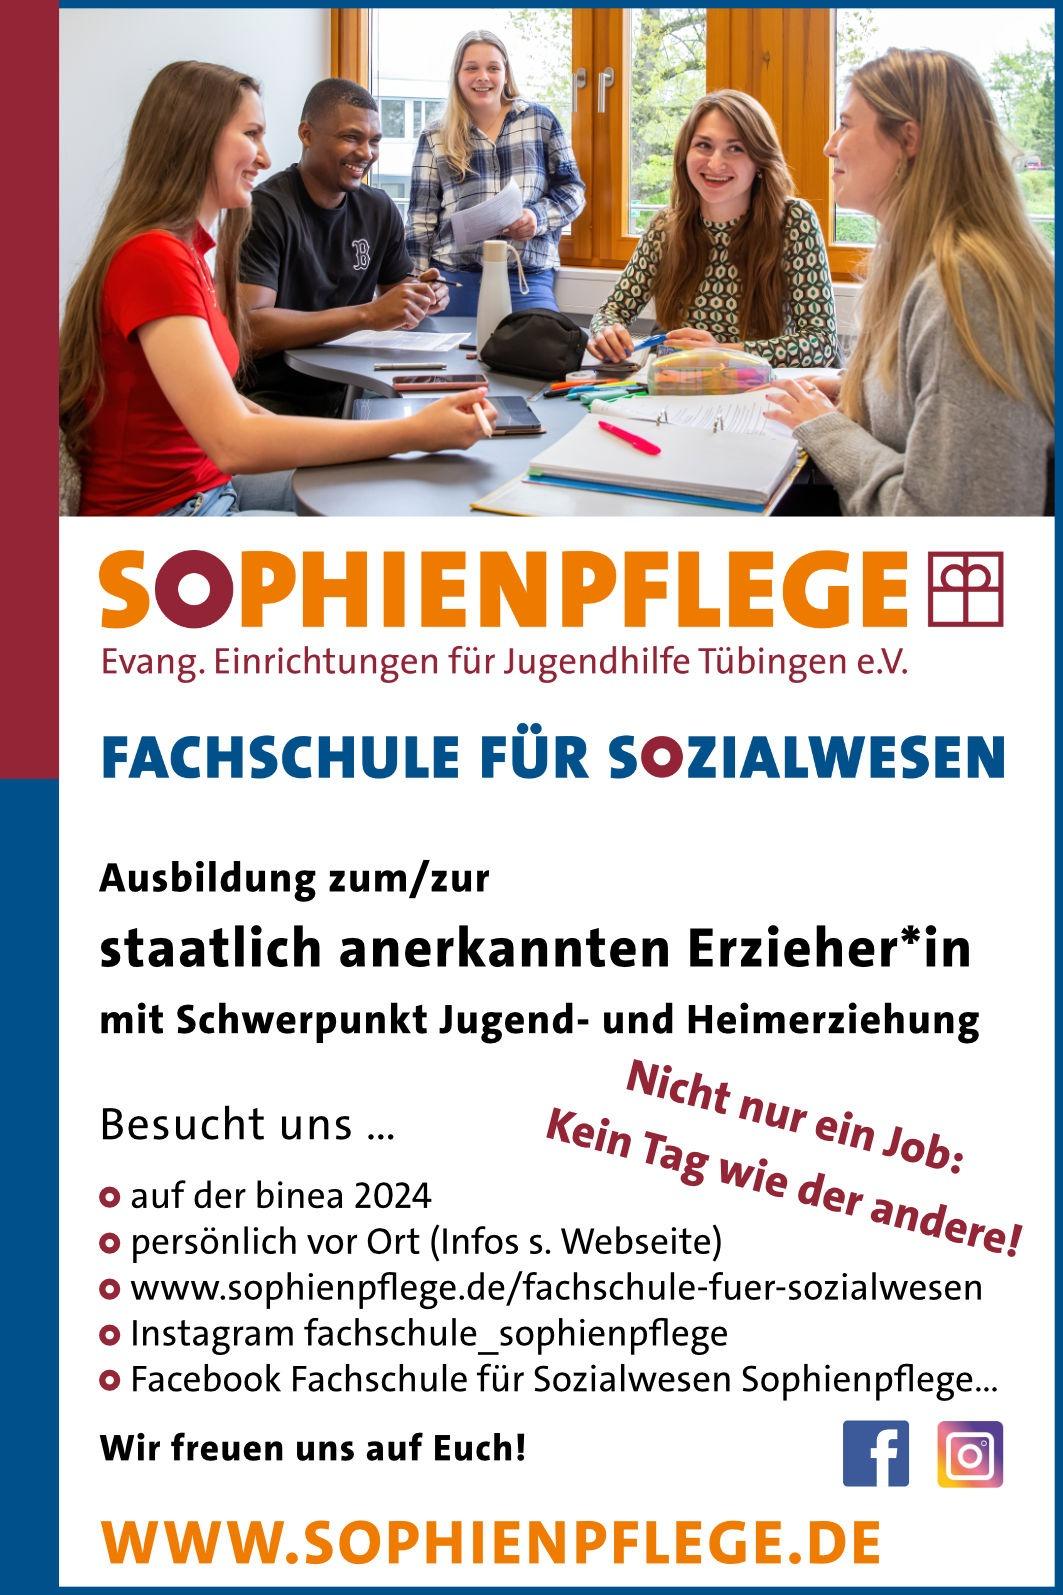 Staatlich anerkannte*r Erzieher*in (Schwerpunkt Jugend- und Heimerziehung) | Sophienpflege, Fachschule für Sozialwesen, Tübingen